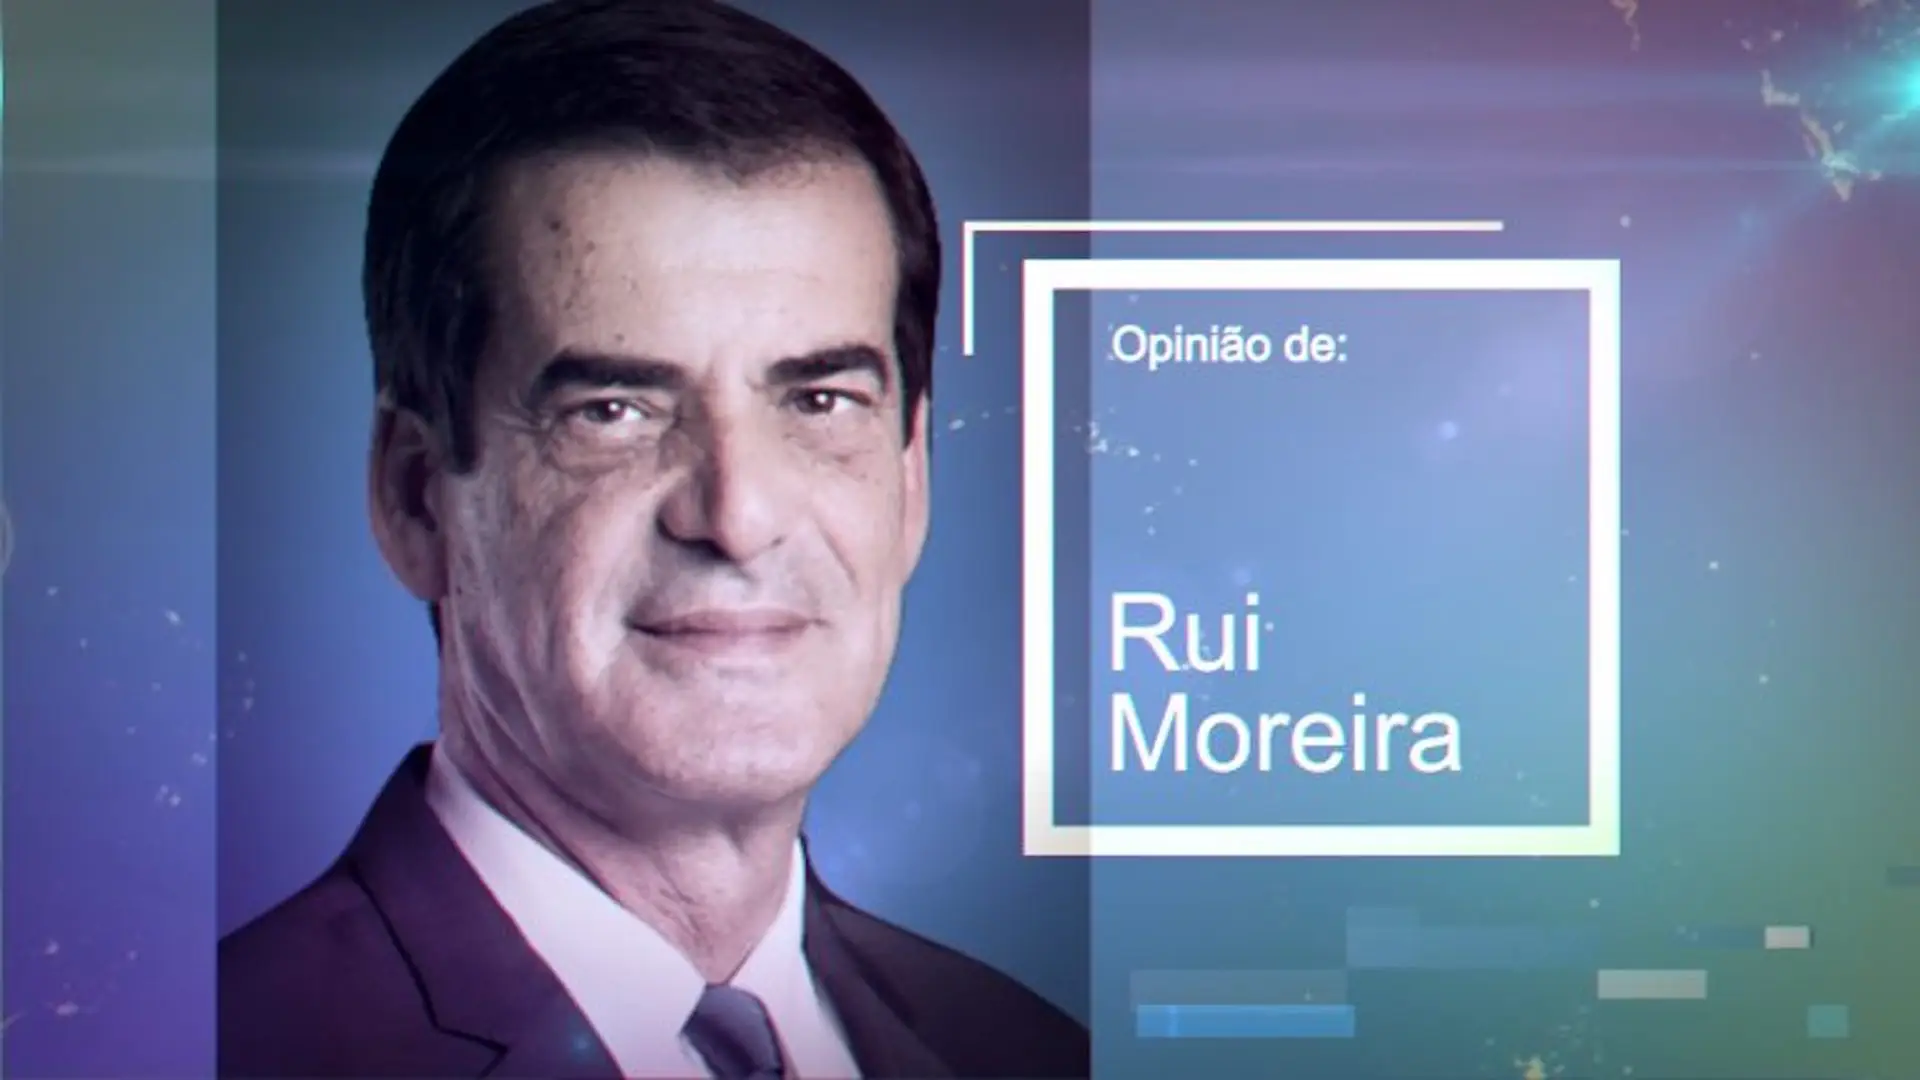 Rui Moreira Comentador Tvi24